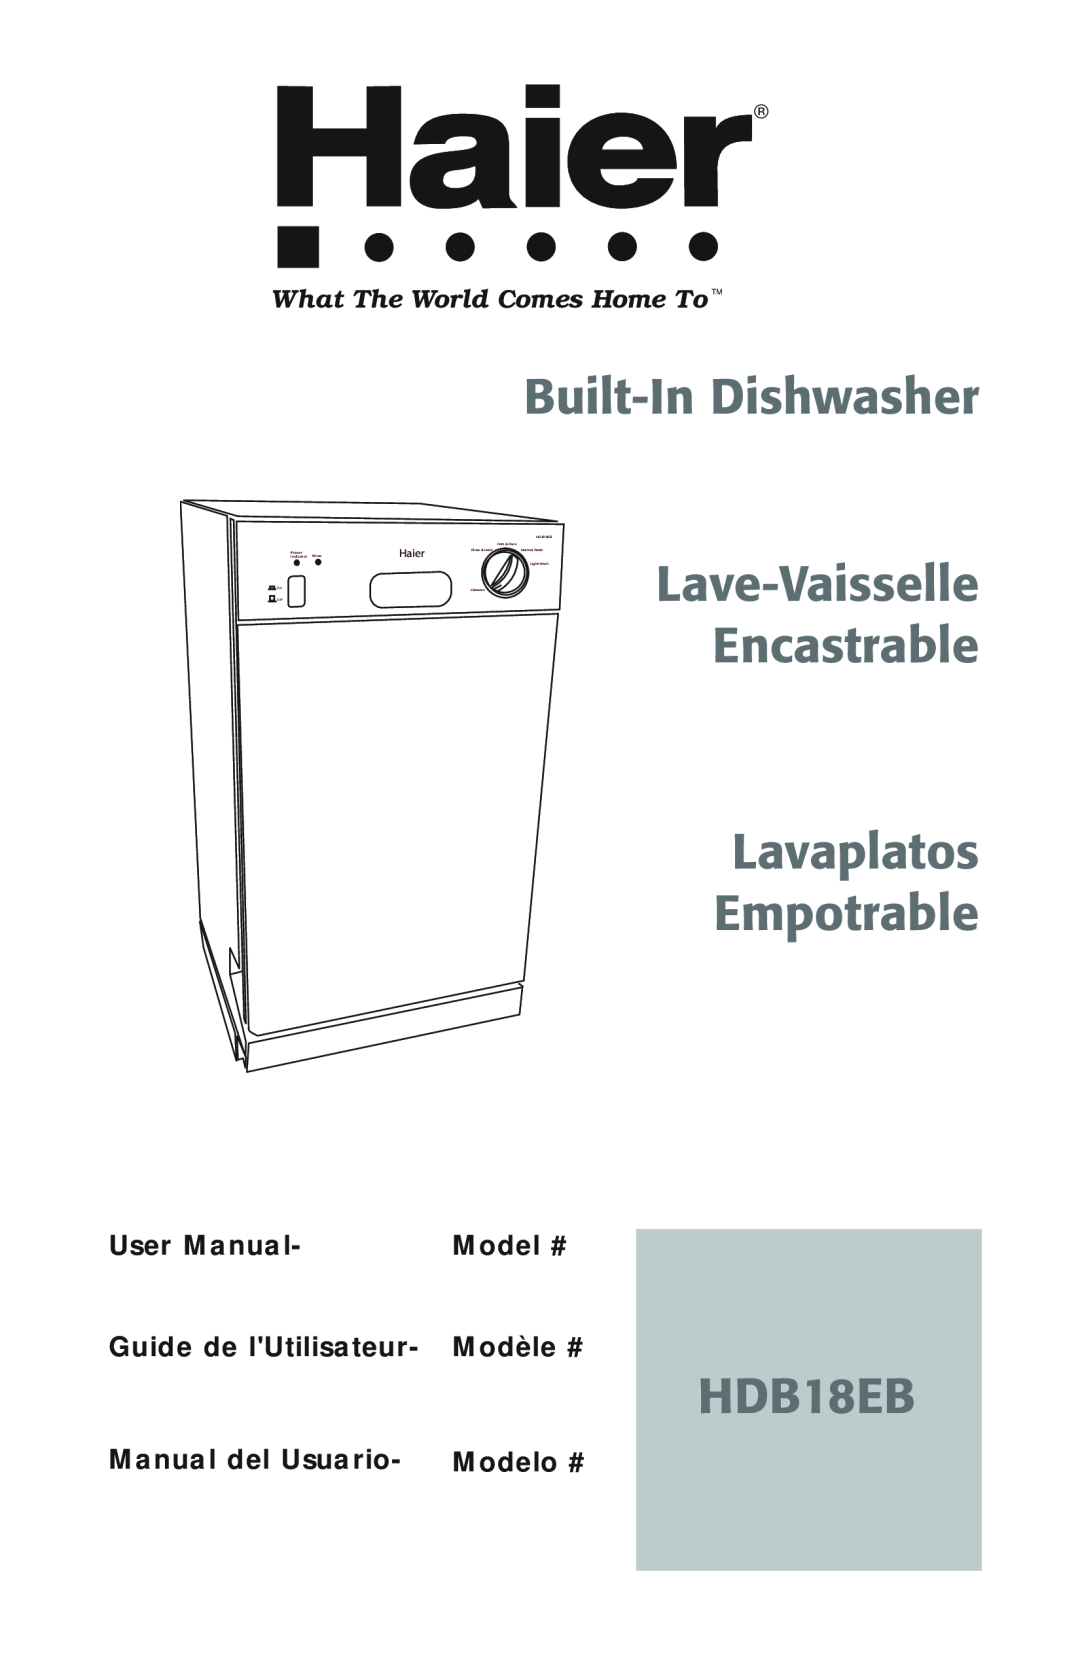 Haier HDB18EB user manual Built-In Dishwasher, Lave-Vaisselle Encastrable Lavaplatos Empotrable, Model #, Modèle #, Haier 